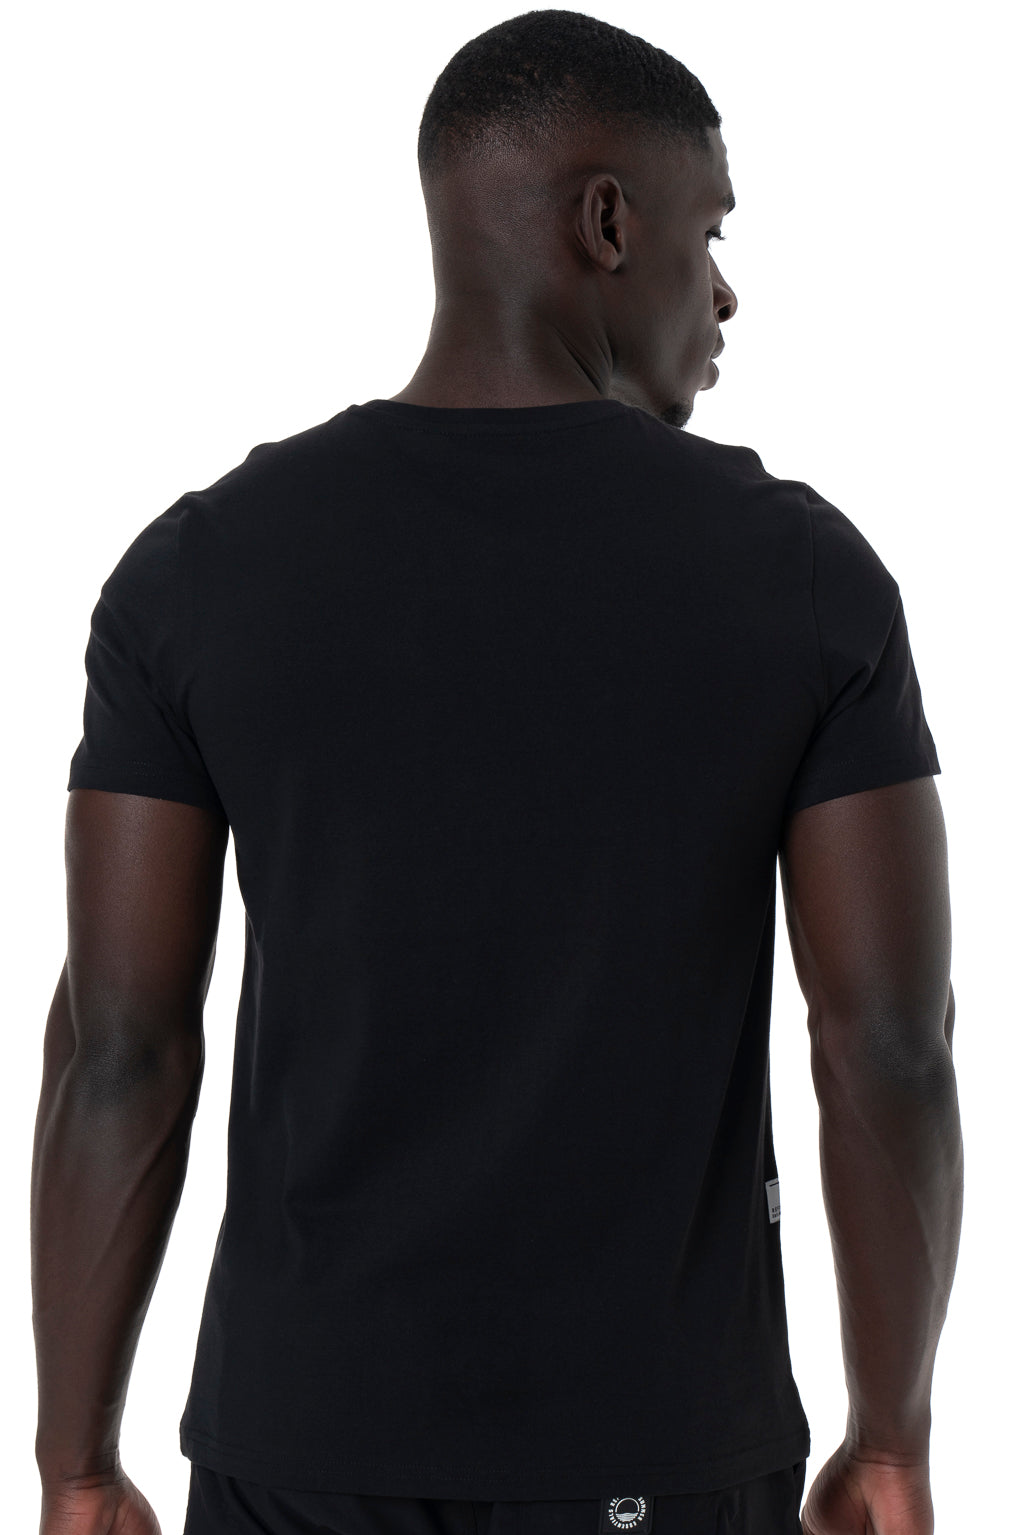 Branded T-Shirt _ 142535 _ Black